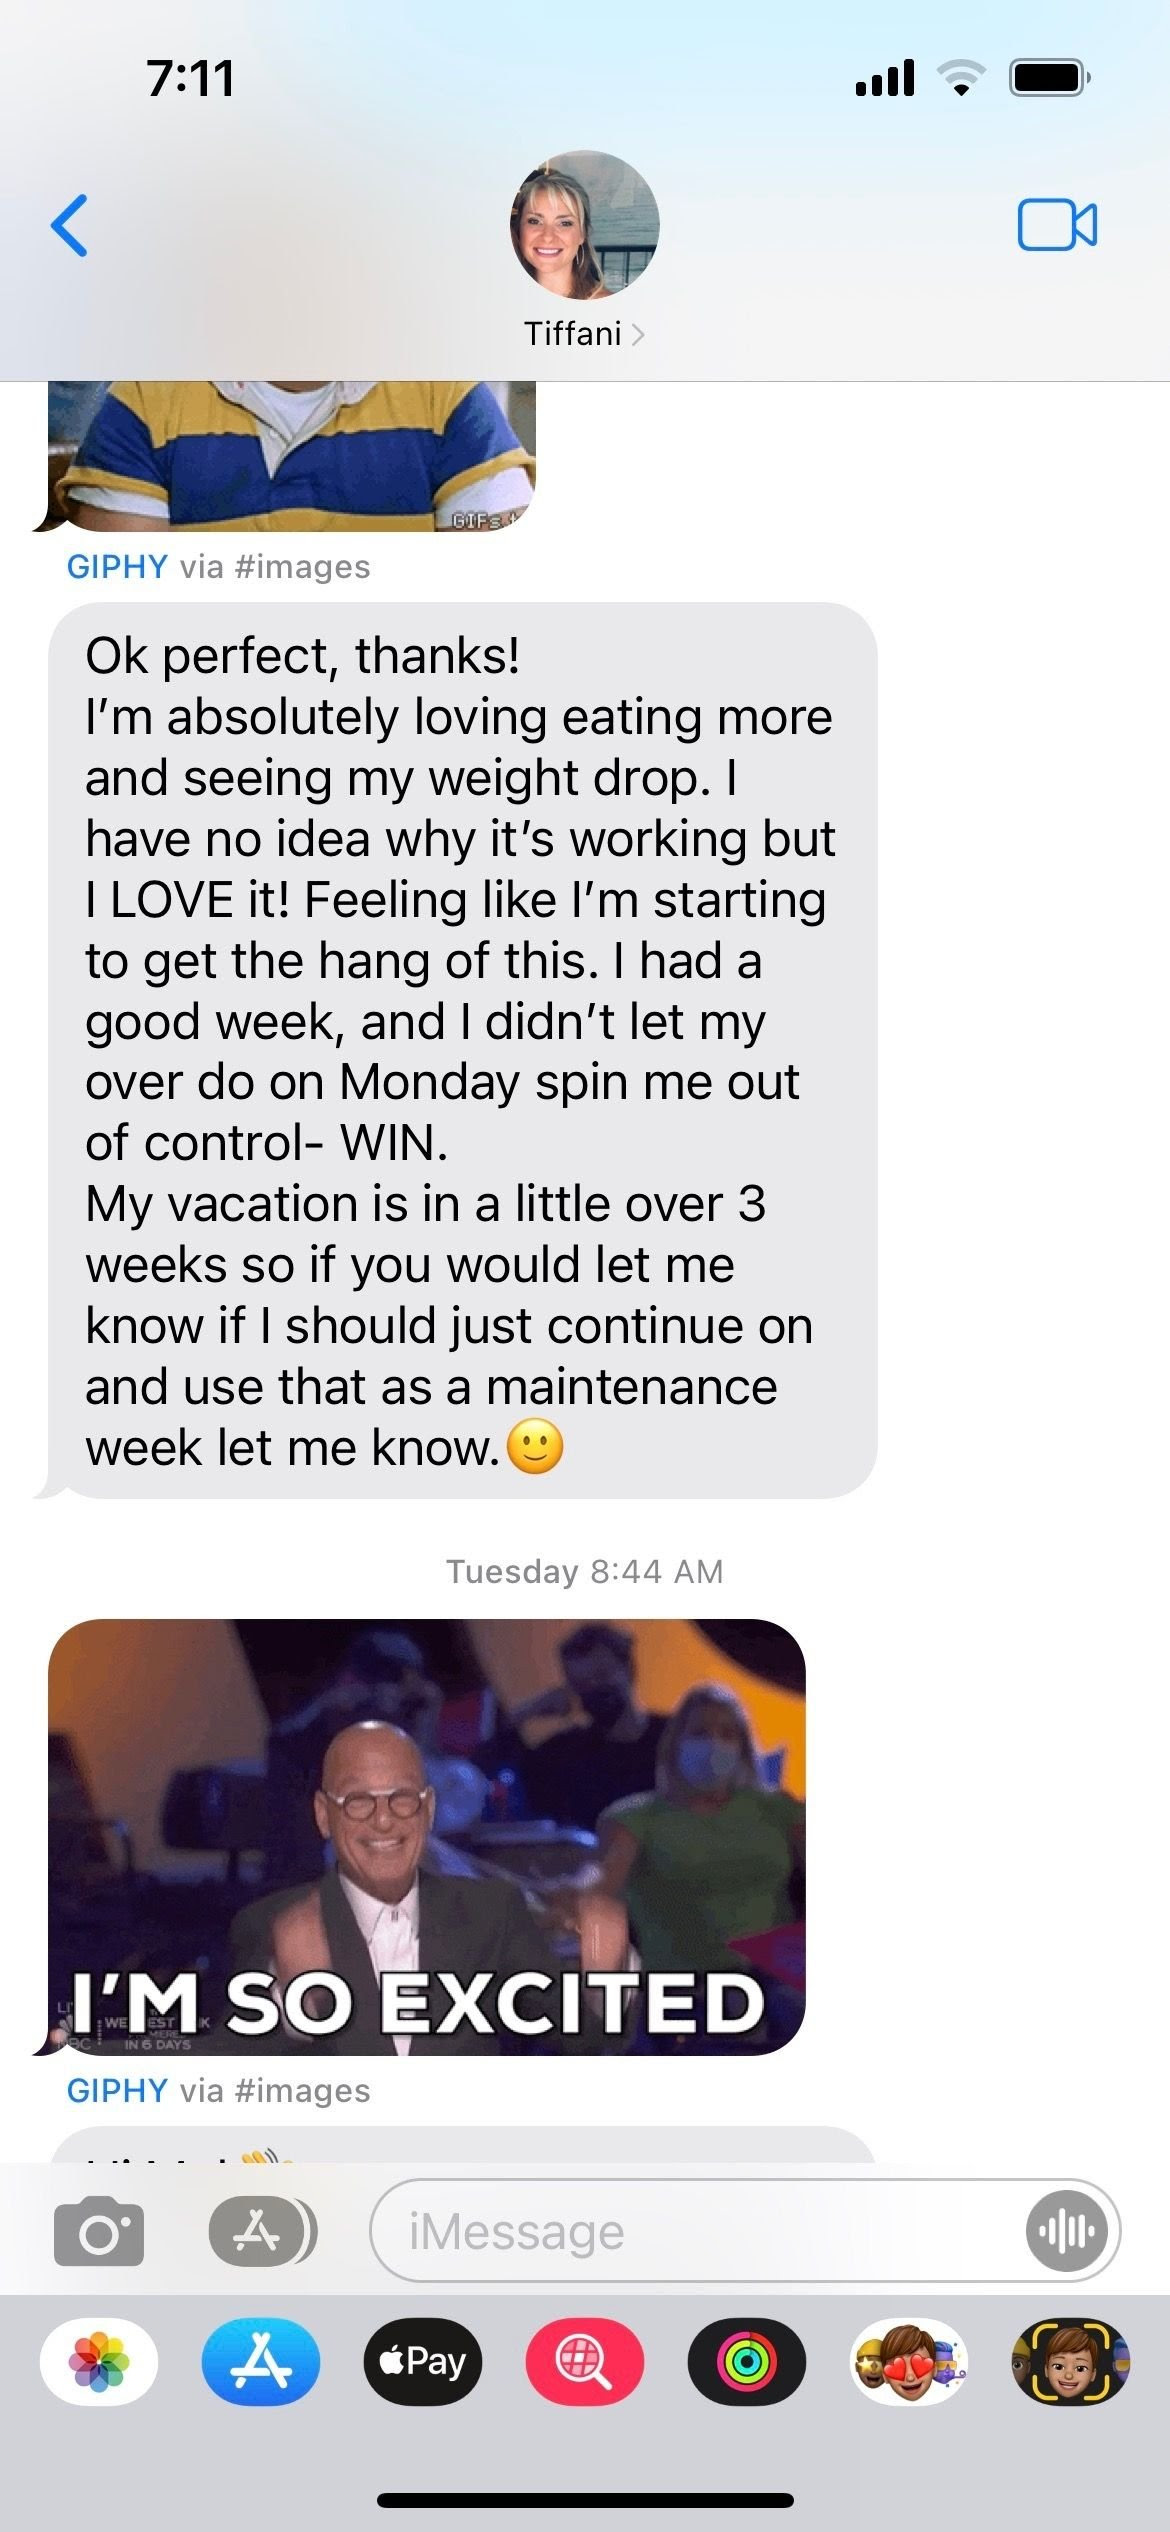 Text about Tiffani's weight loss progress